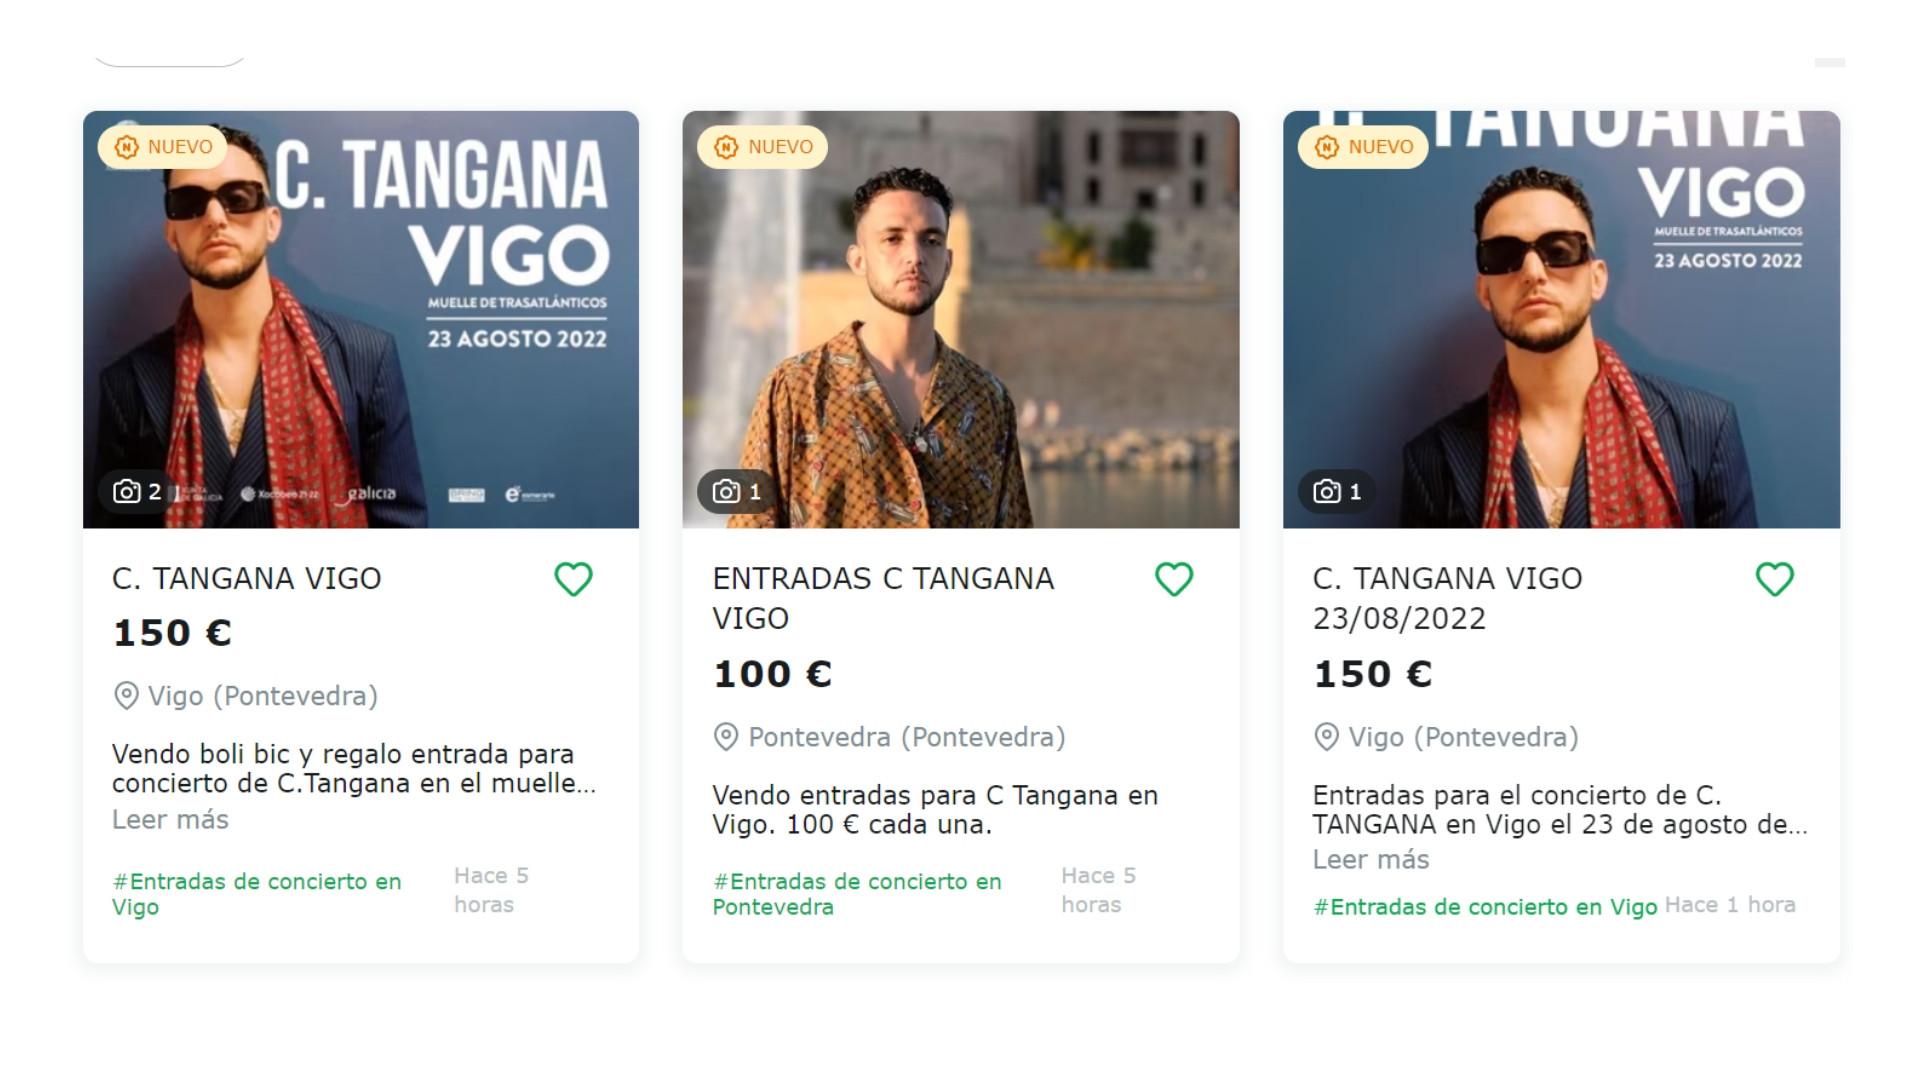 Anuncios de venta de entradas para el concierto de C. Tangana en Vigo. Foto: milanuncios.com